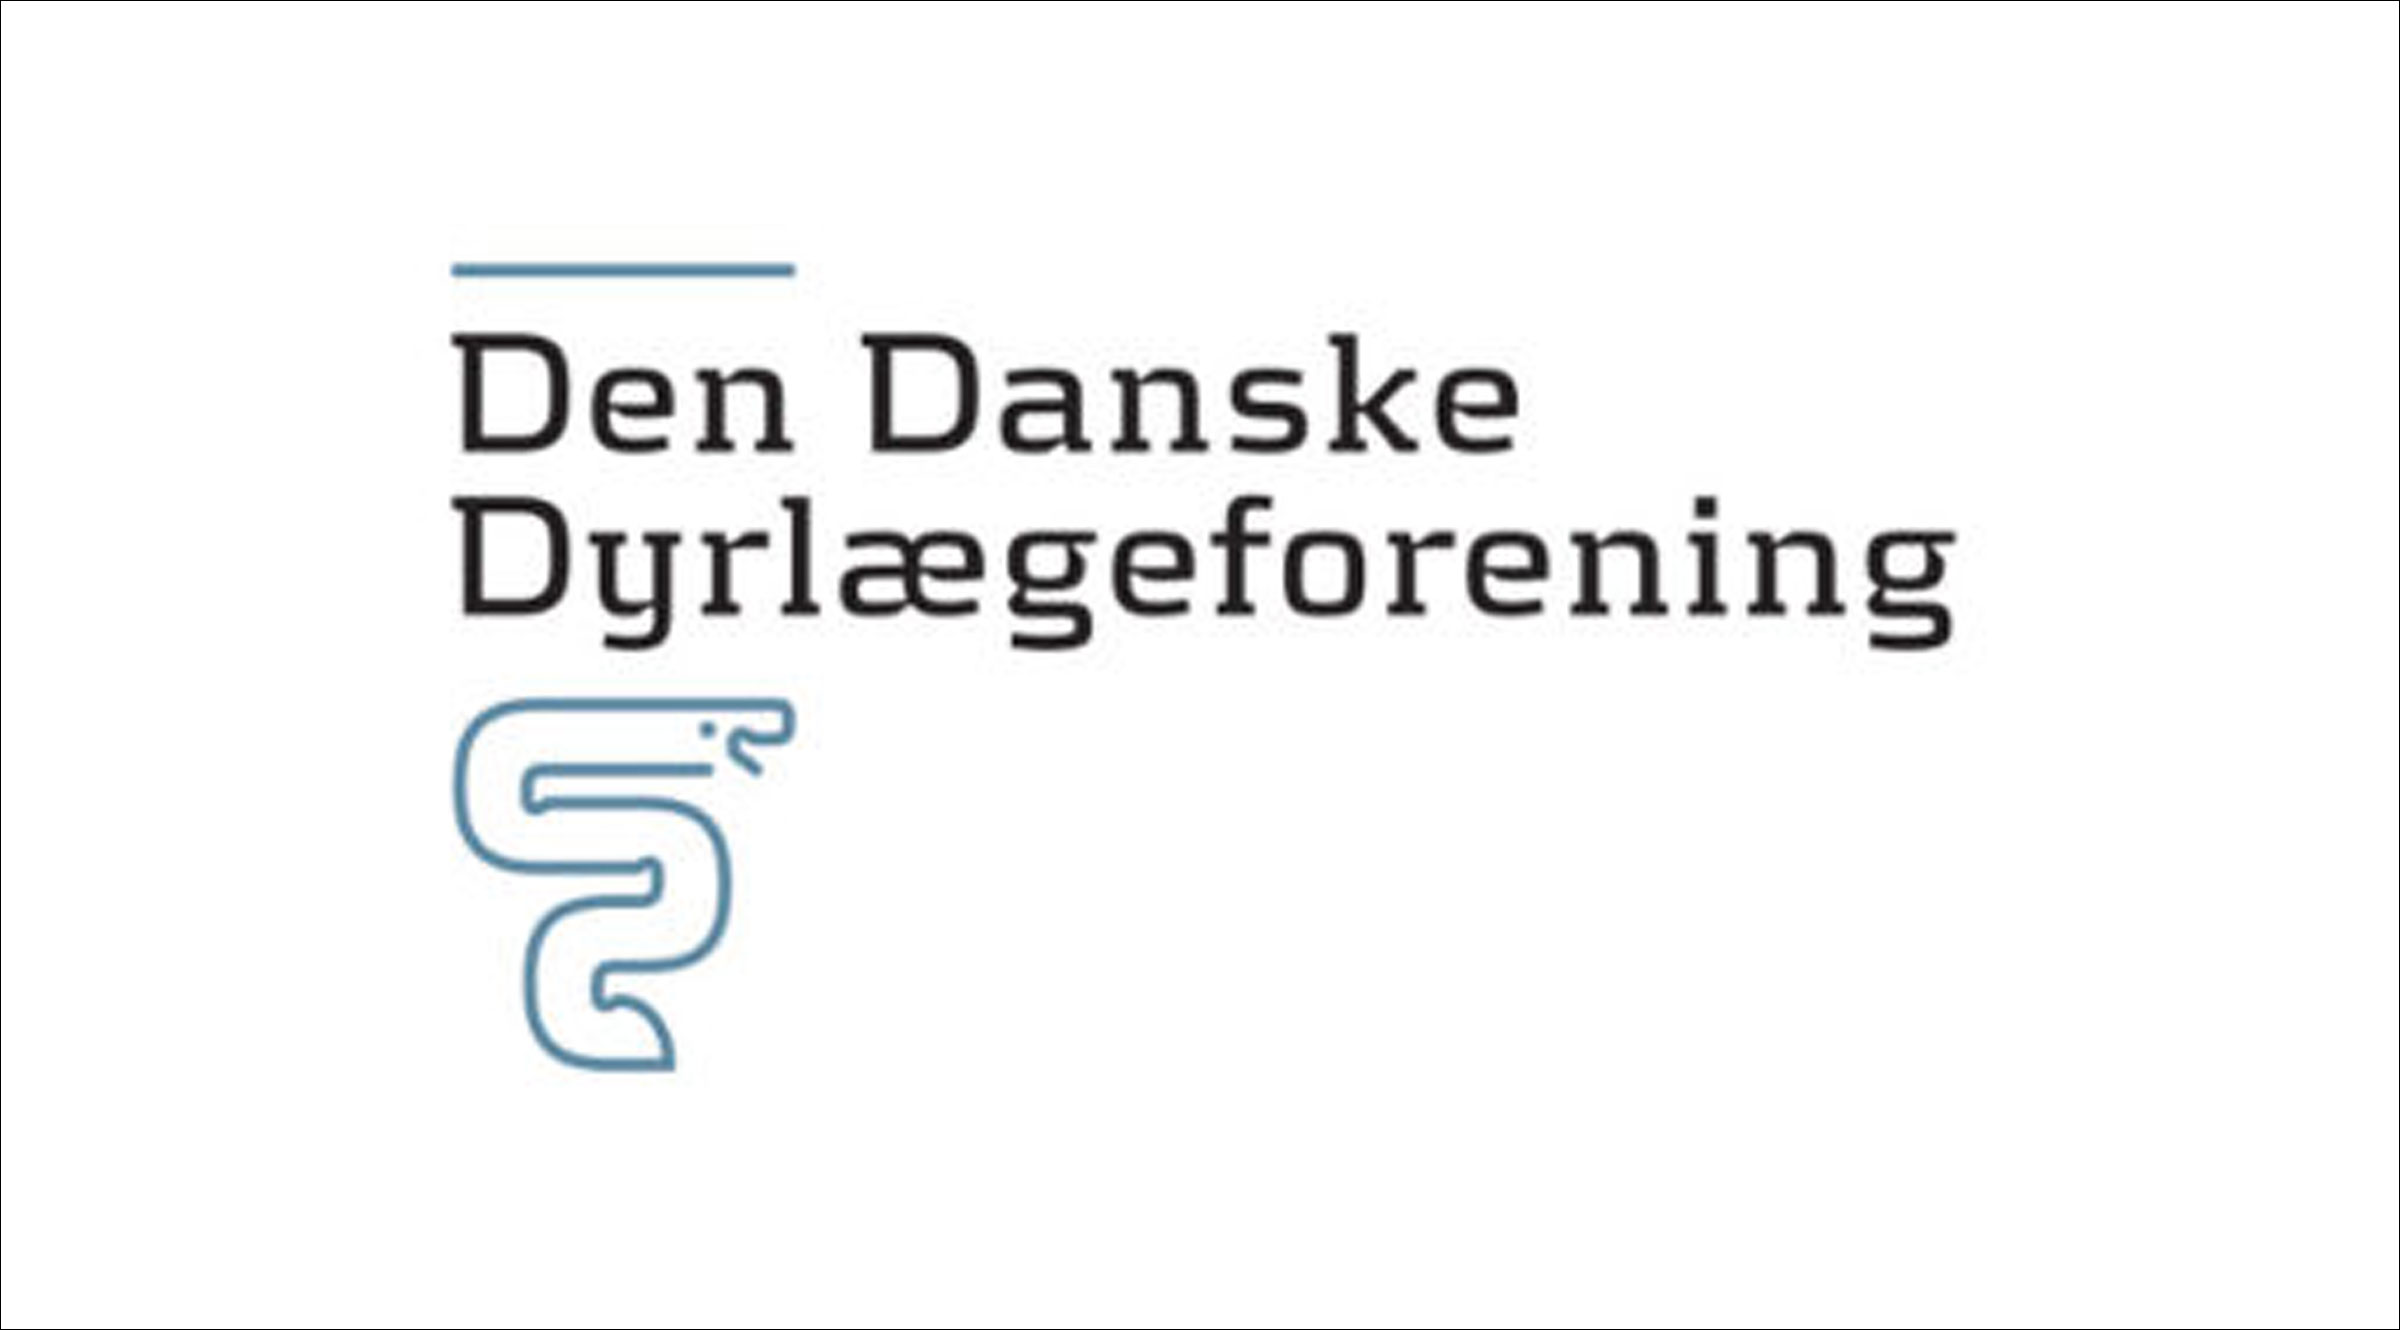 Den Danske Dyrlaegeforening logo 400x284